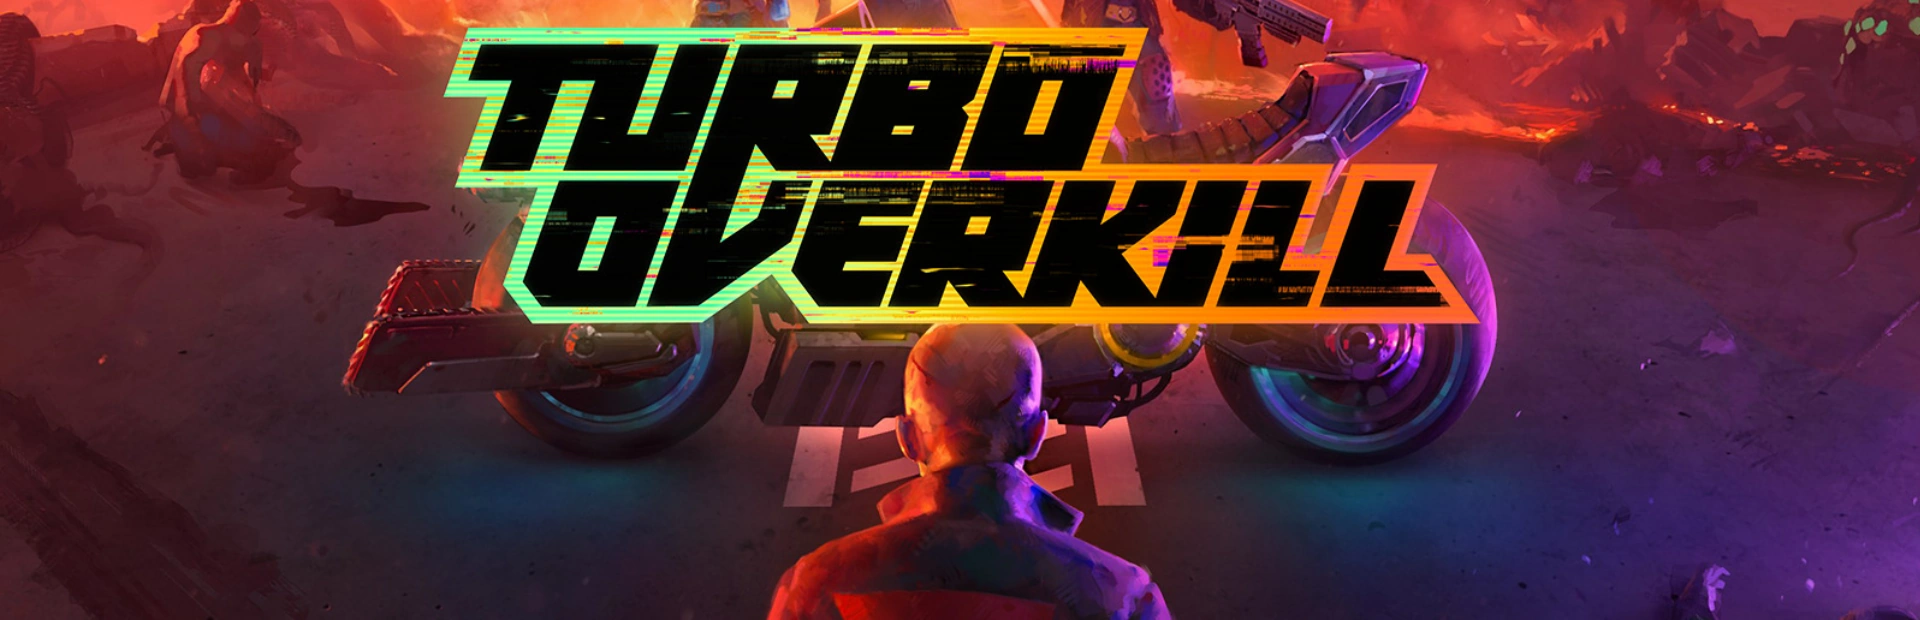 دانلود بازی Turbo Overkill برای کامپیوتر | گیمباتو